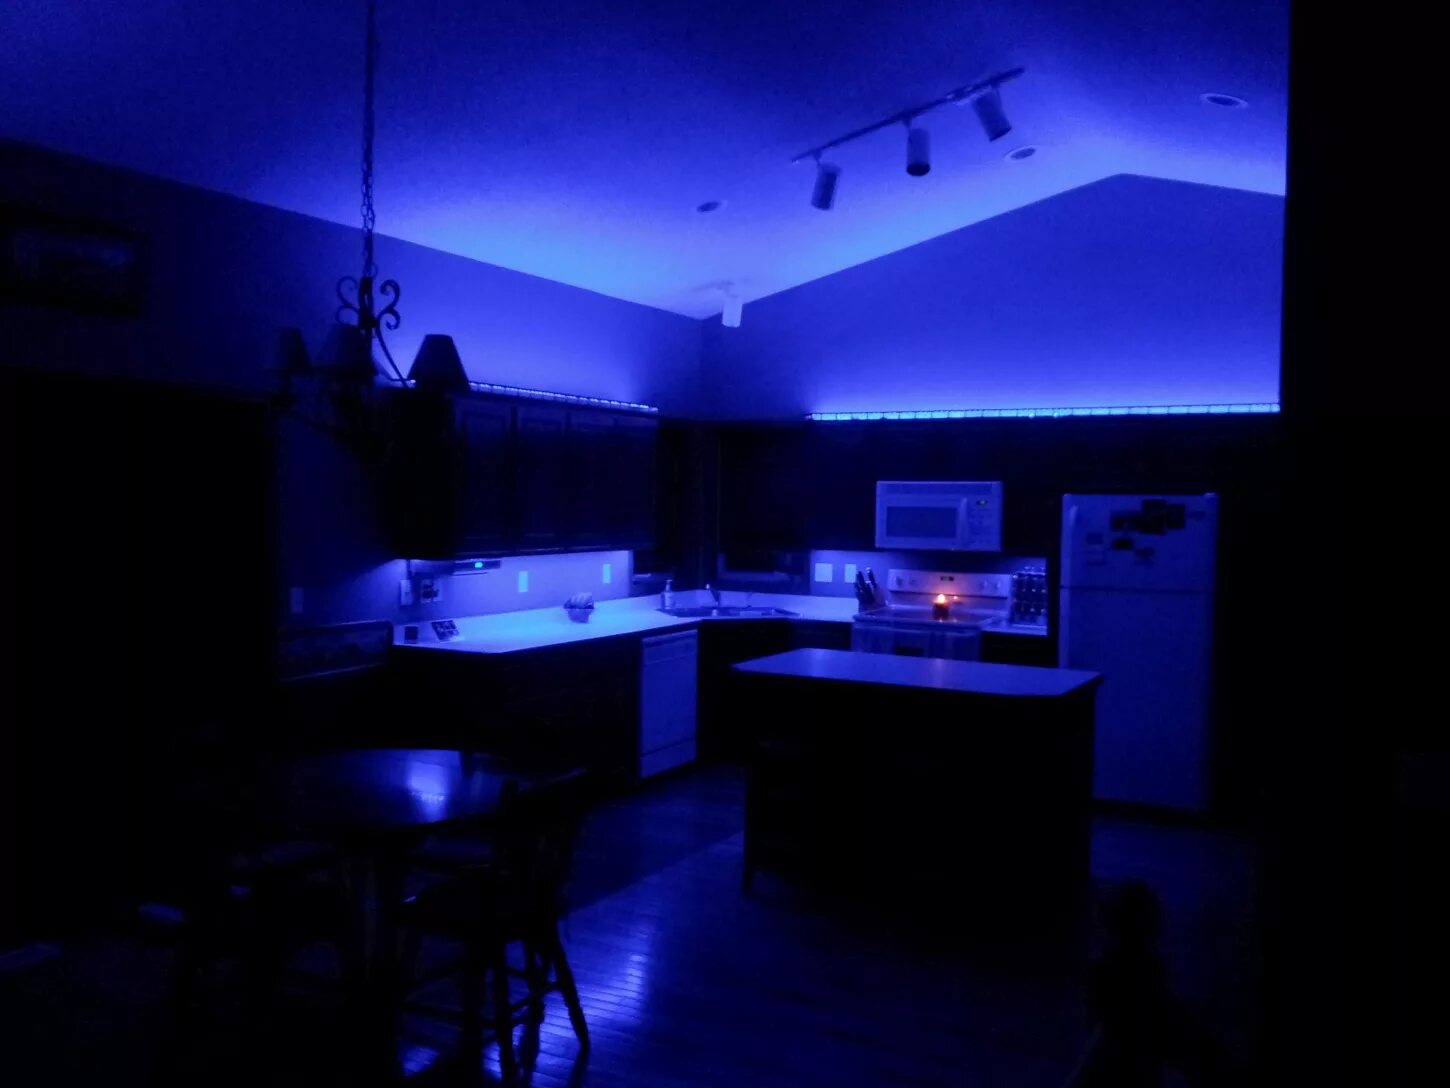 Ночью на кухне ремикс. Кухня с неоновой подсветкой. Светодиодная лента в интерьере. Синяя неоновая подсветка. Кухня с голубой неоновой подсветкой.